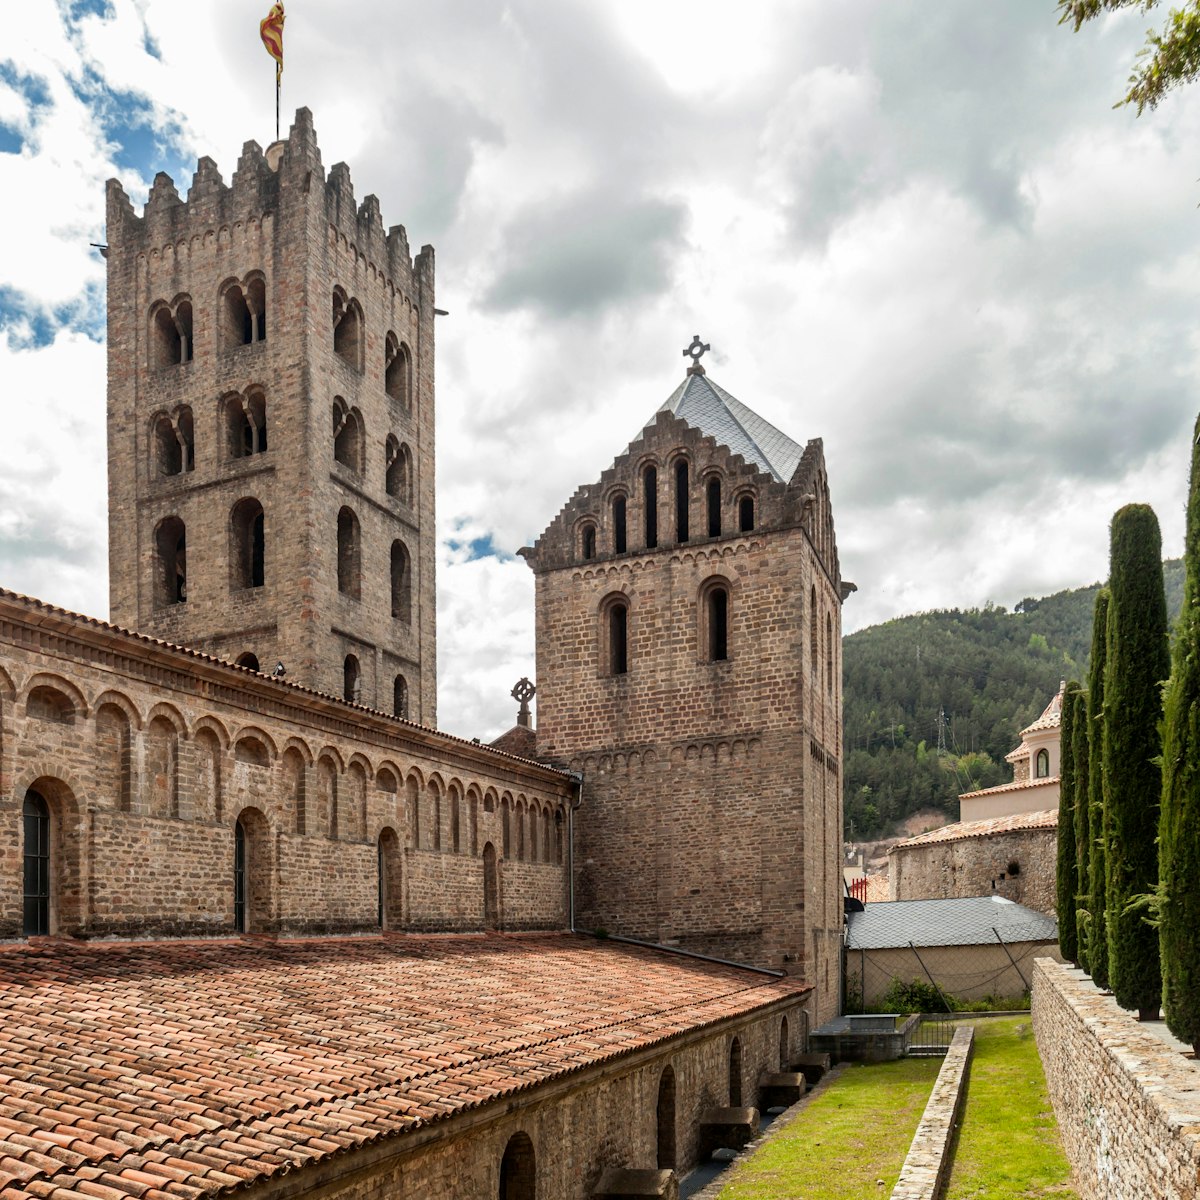 Monastery of Santa Maria de Ripoll.